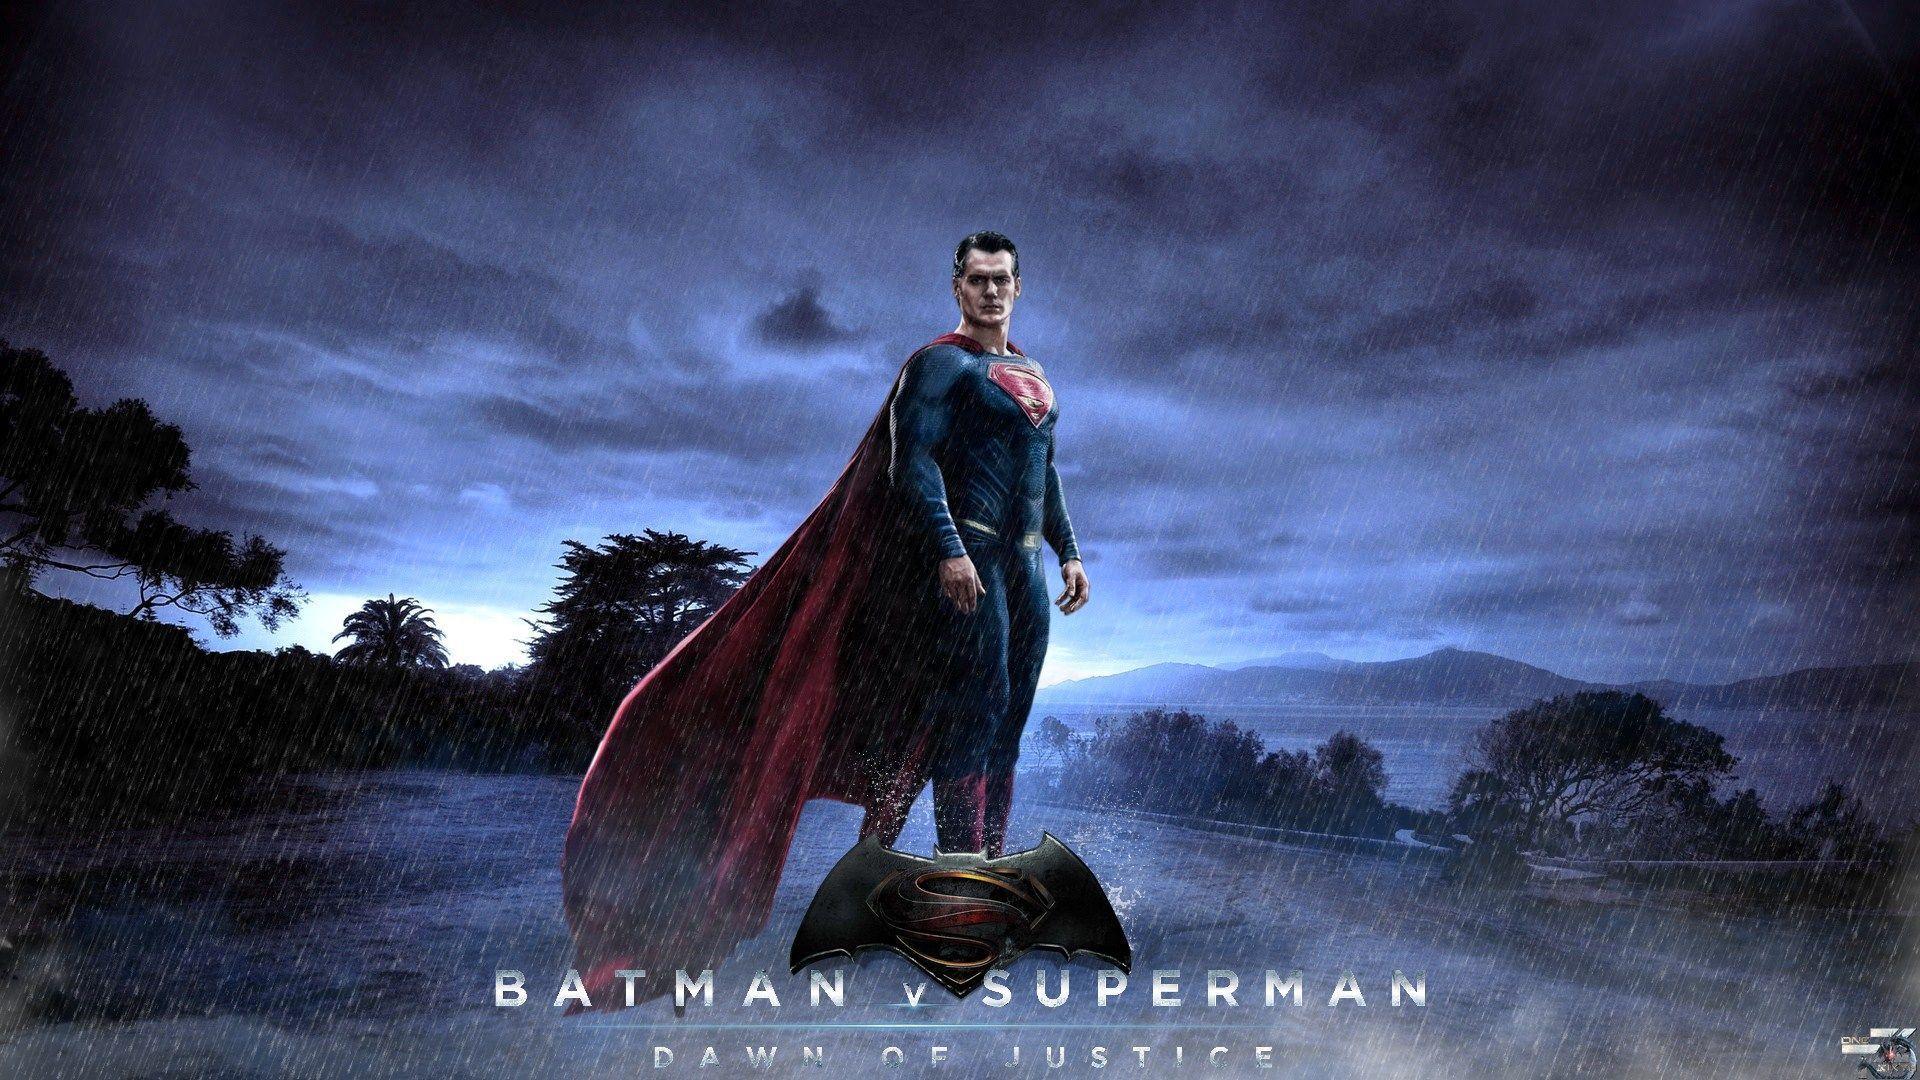 Batman V Superman HD Poster 2015 Wallpaper. Download High